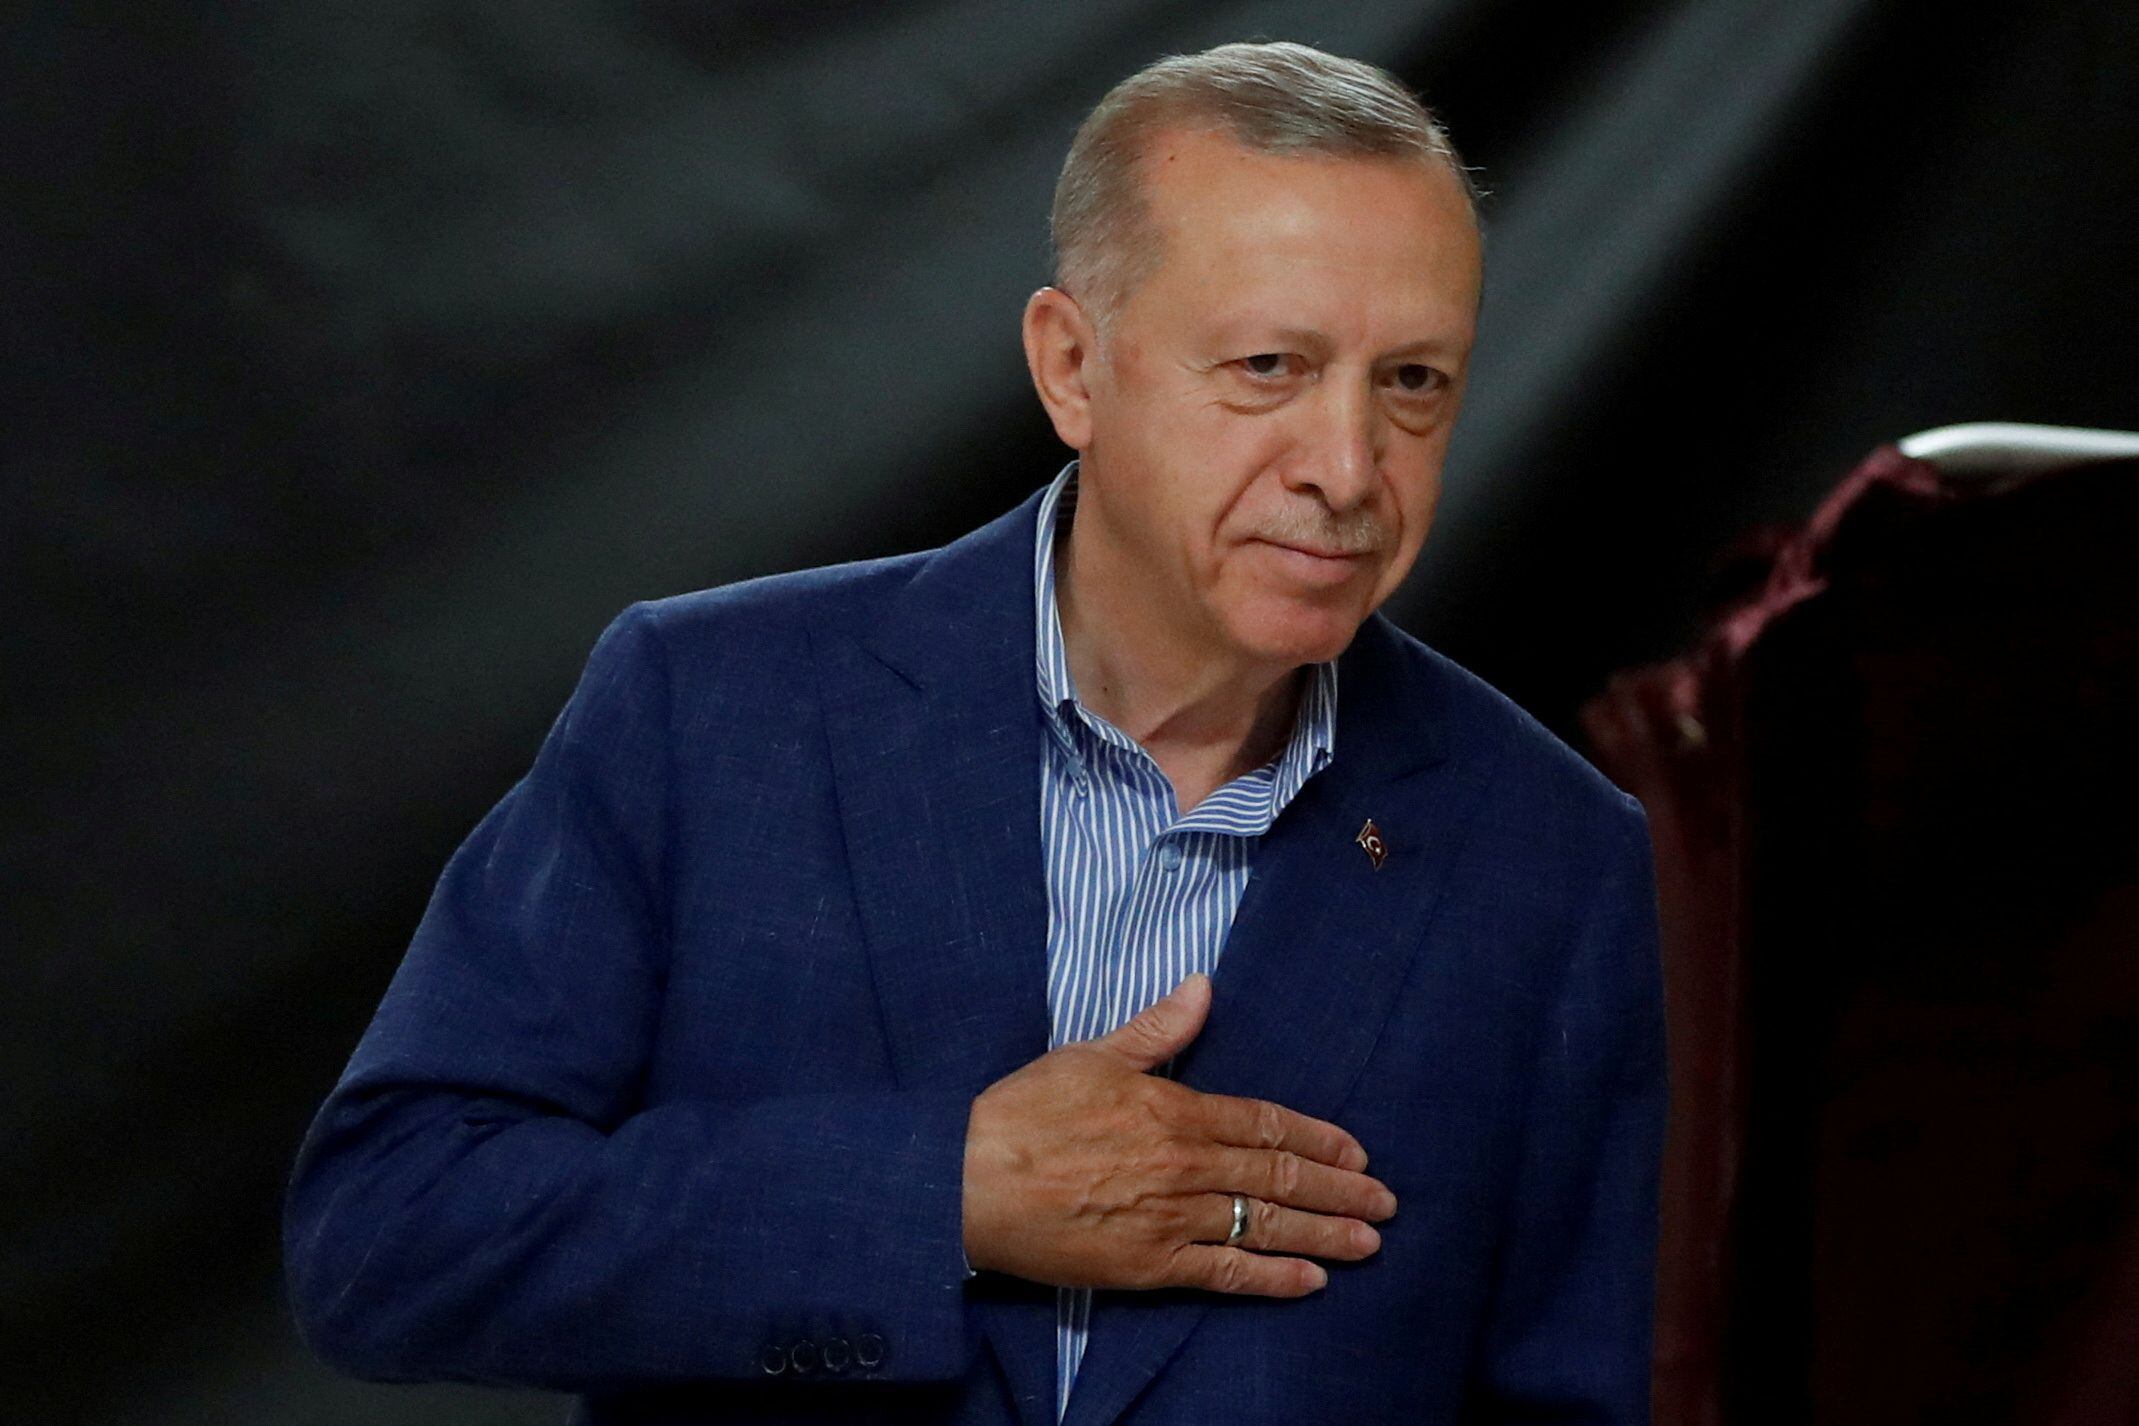 El presidente turco Tayyip Erdogan vota en un colegio electoral durante la segunda vuelta de las elecciones presidenciales en Estambul, Turquía 28 de mayo 2023. REUTERS